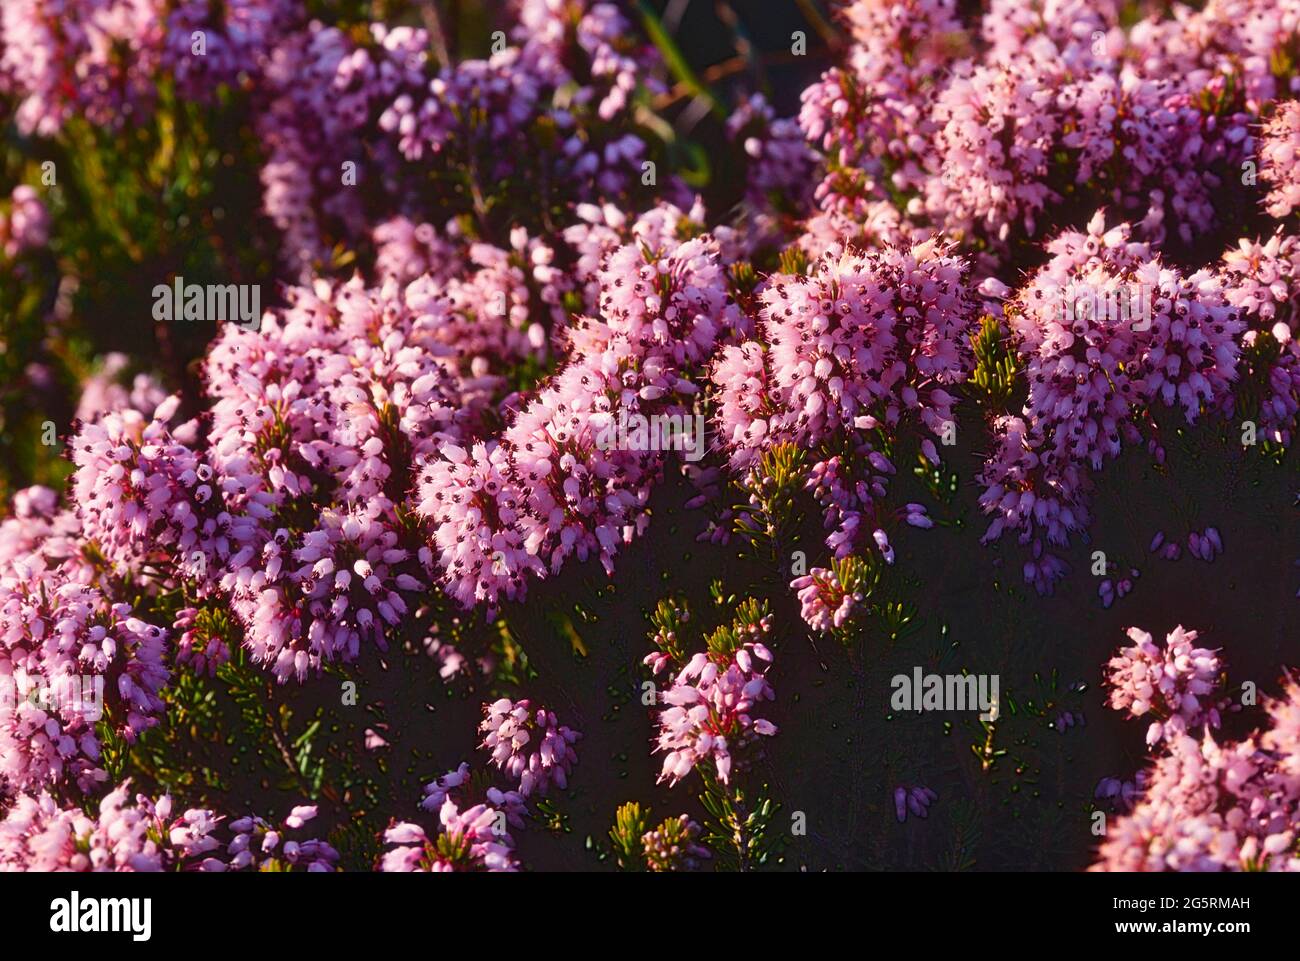 Vielblütige Heide, Erica multiflora, Ericaceae, blühend, Blüten, Strauch,  Pflanze, Provence, Frankreich Stock Photo - Alamy